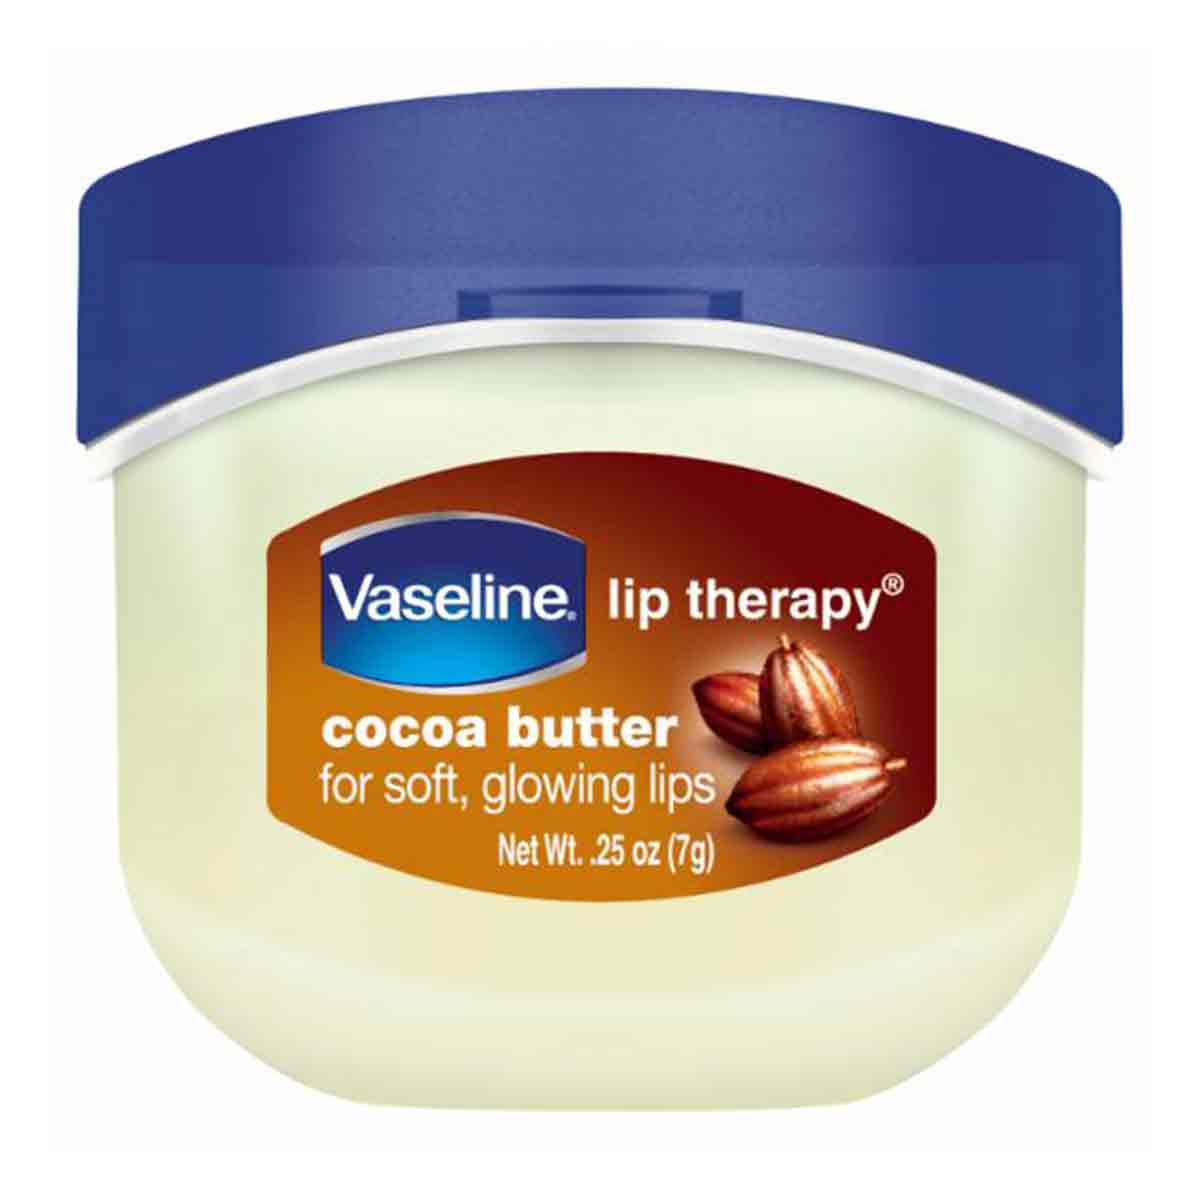 بالم لب درمانی (بوم لب) وازلین Vaseline مدل Cocoa Butter حجم 7 گرم